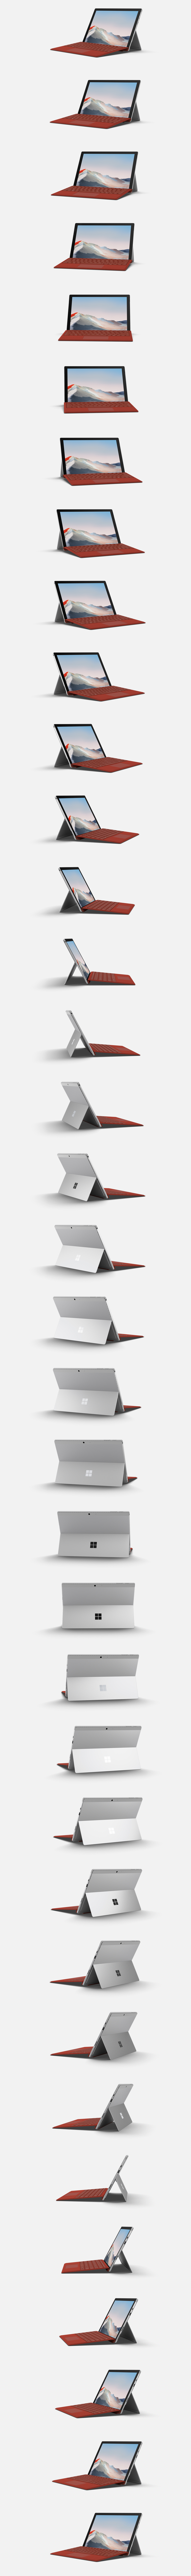 Surface Pro 7+ voor zakelijk gebruik.